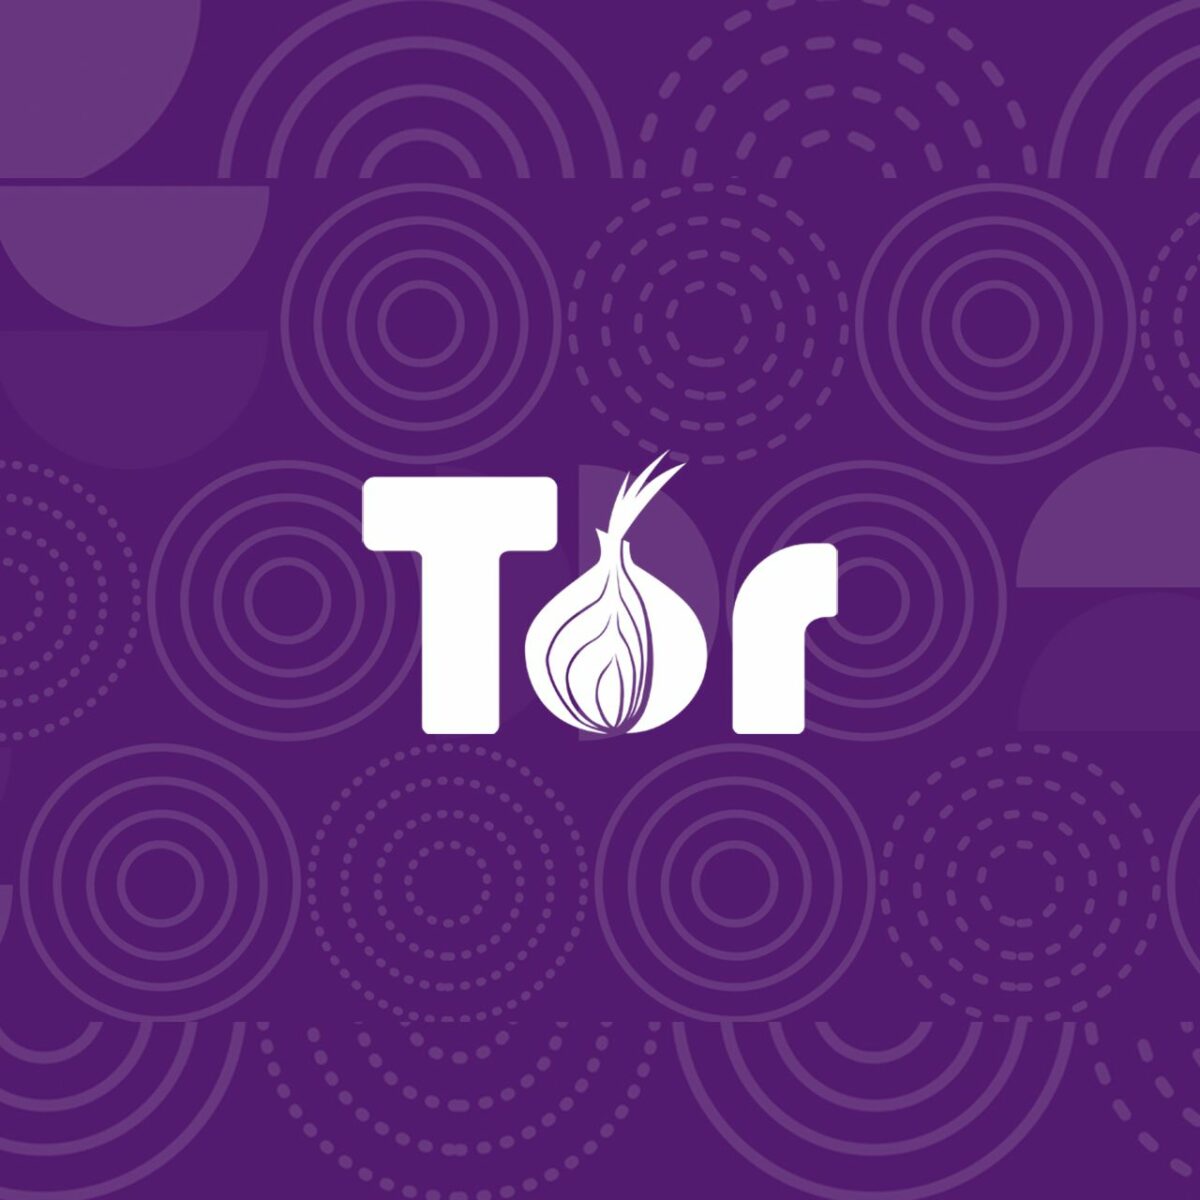 Tor browser microsoft как за 20 грамм марихуаны